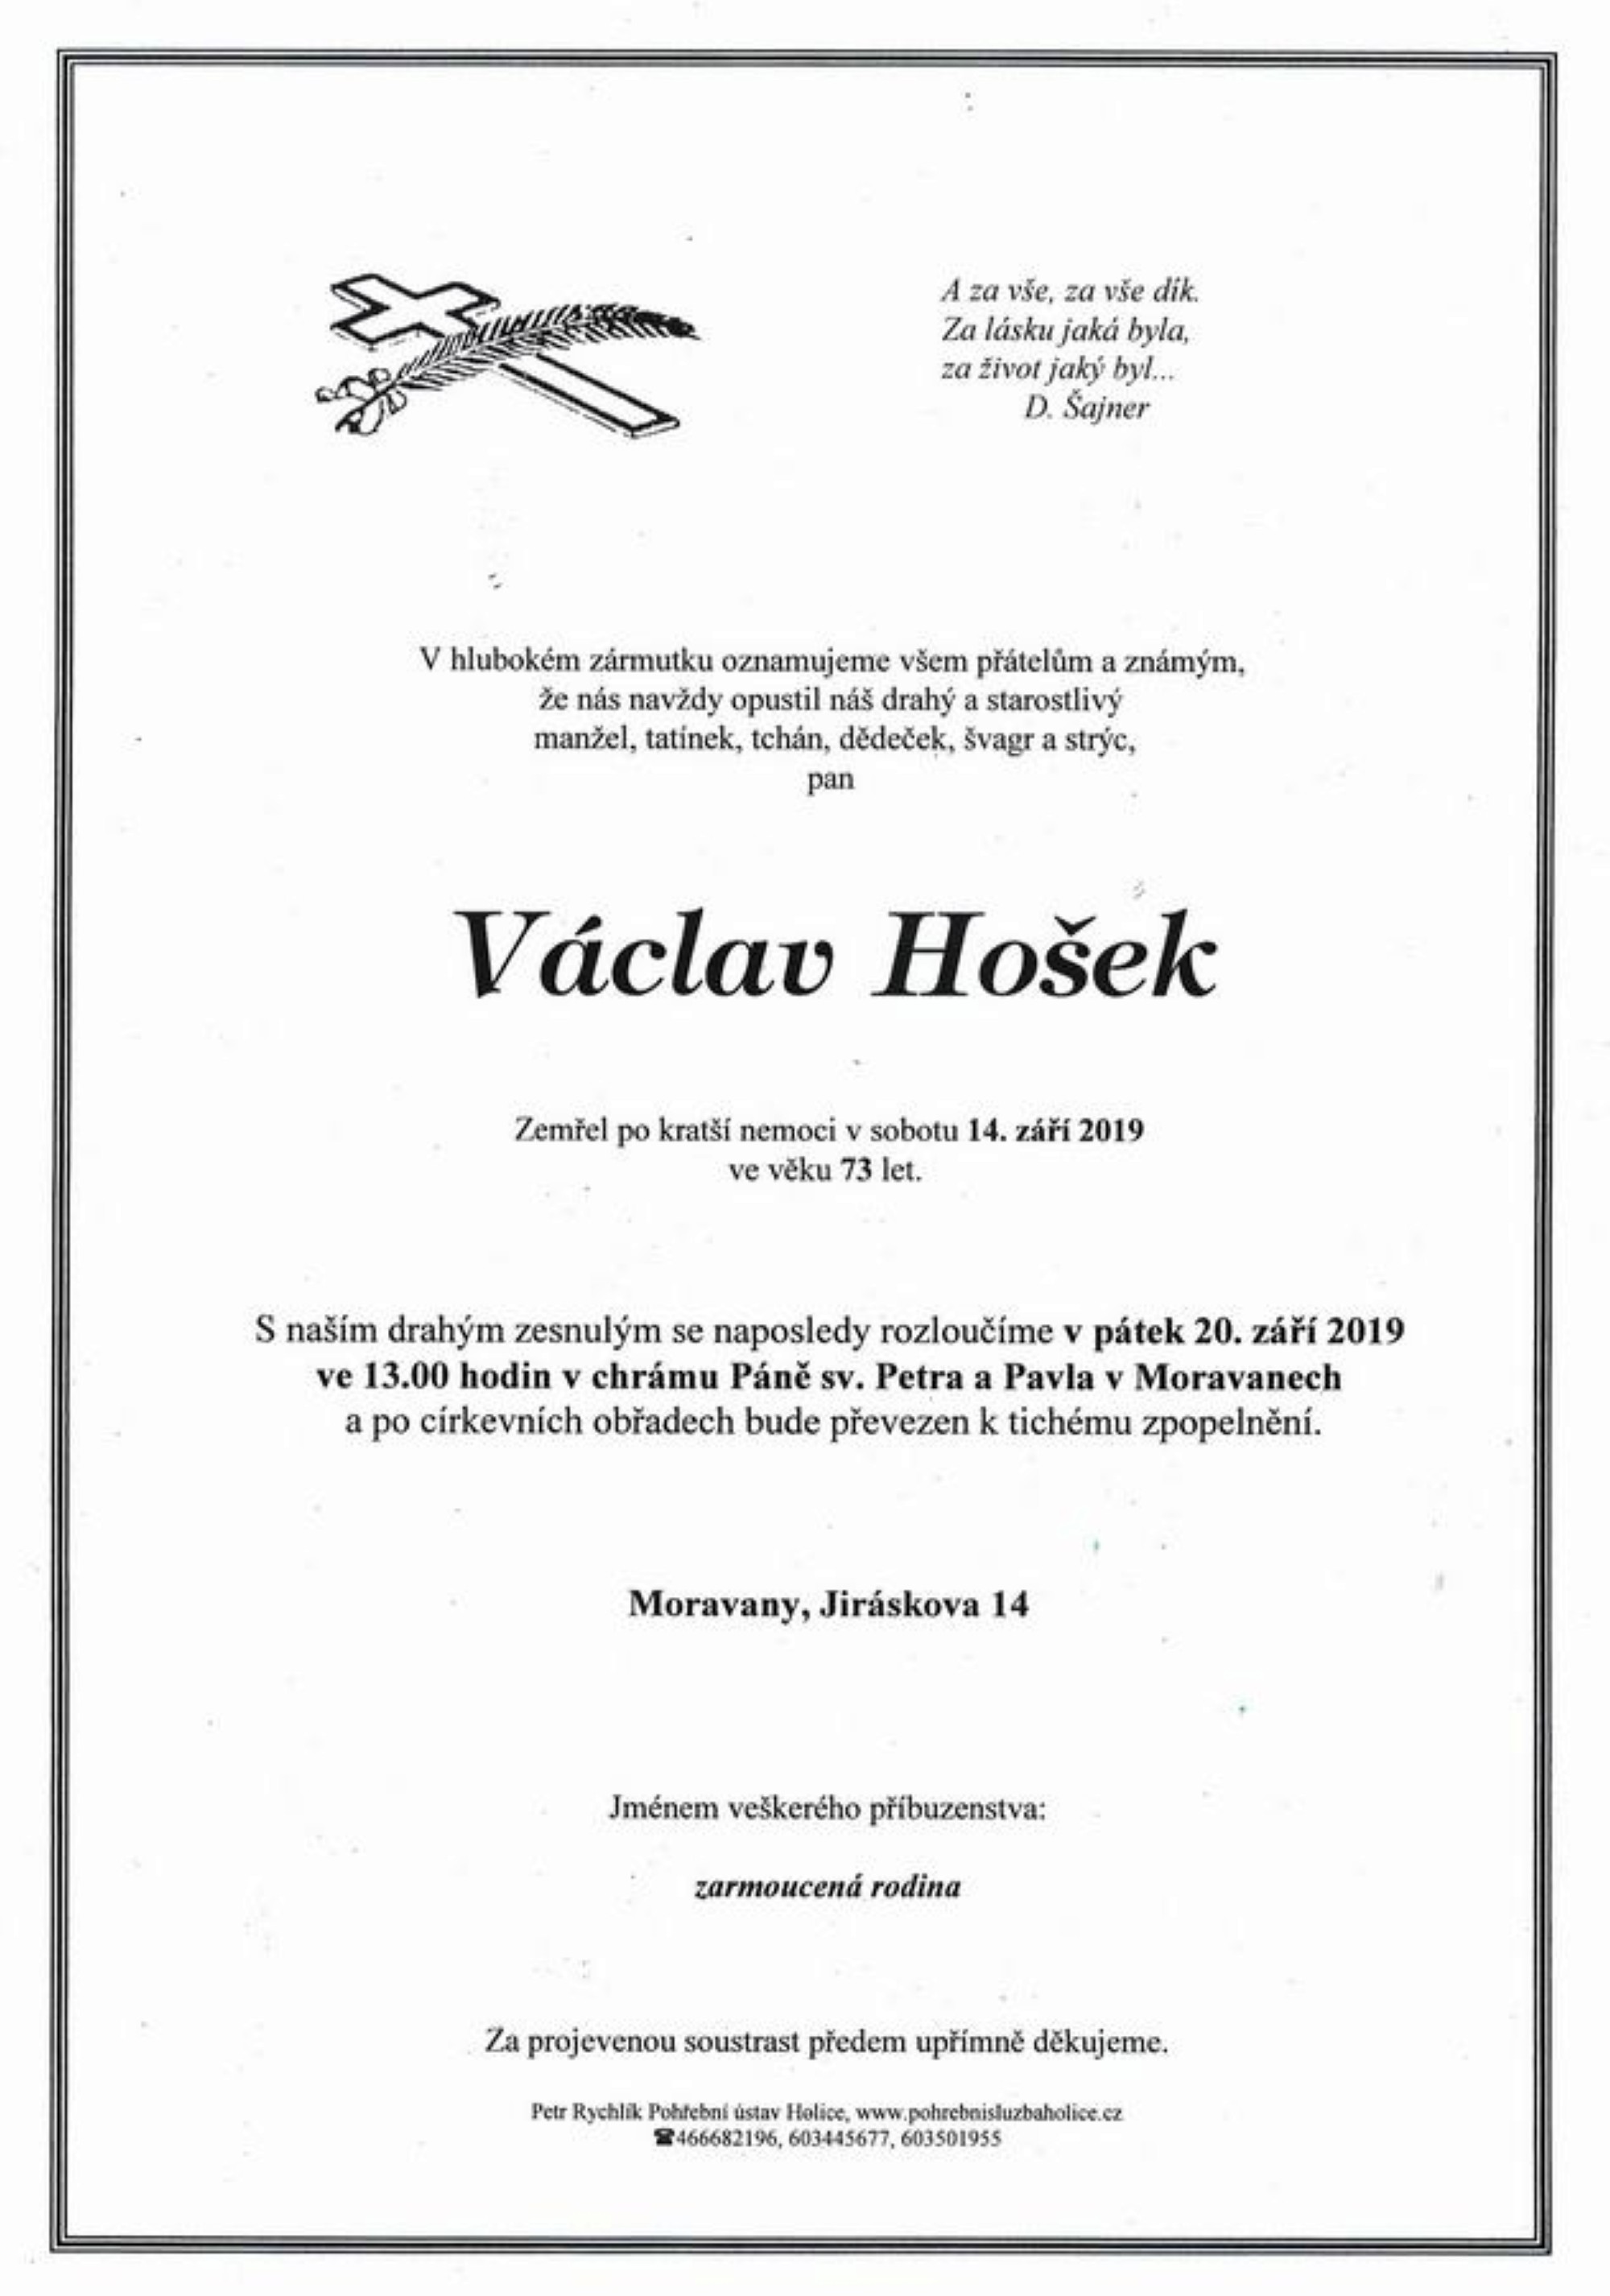 Václav Hošek